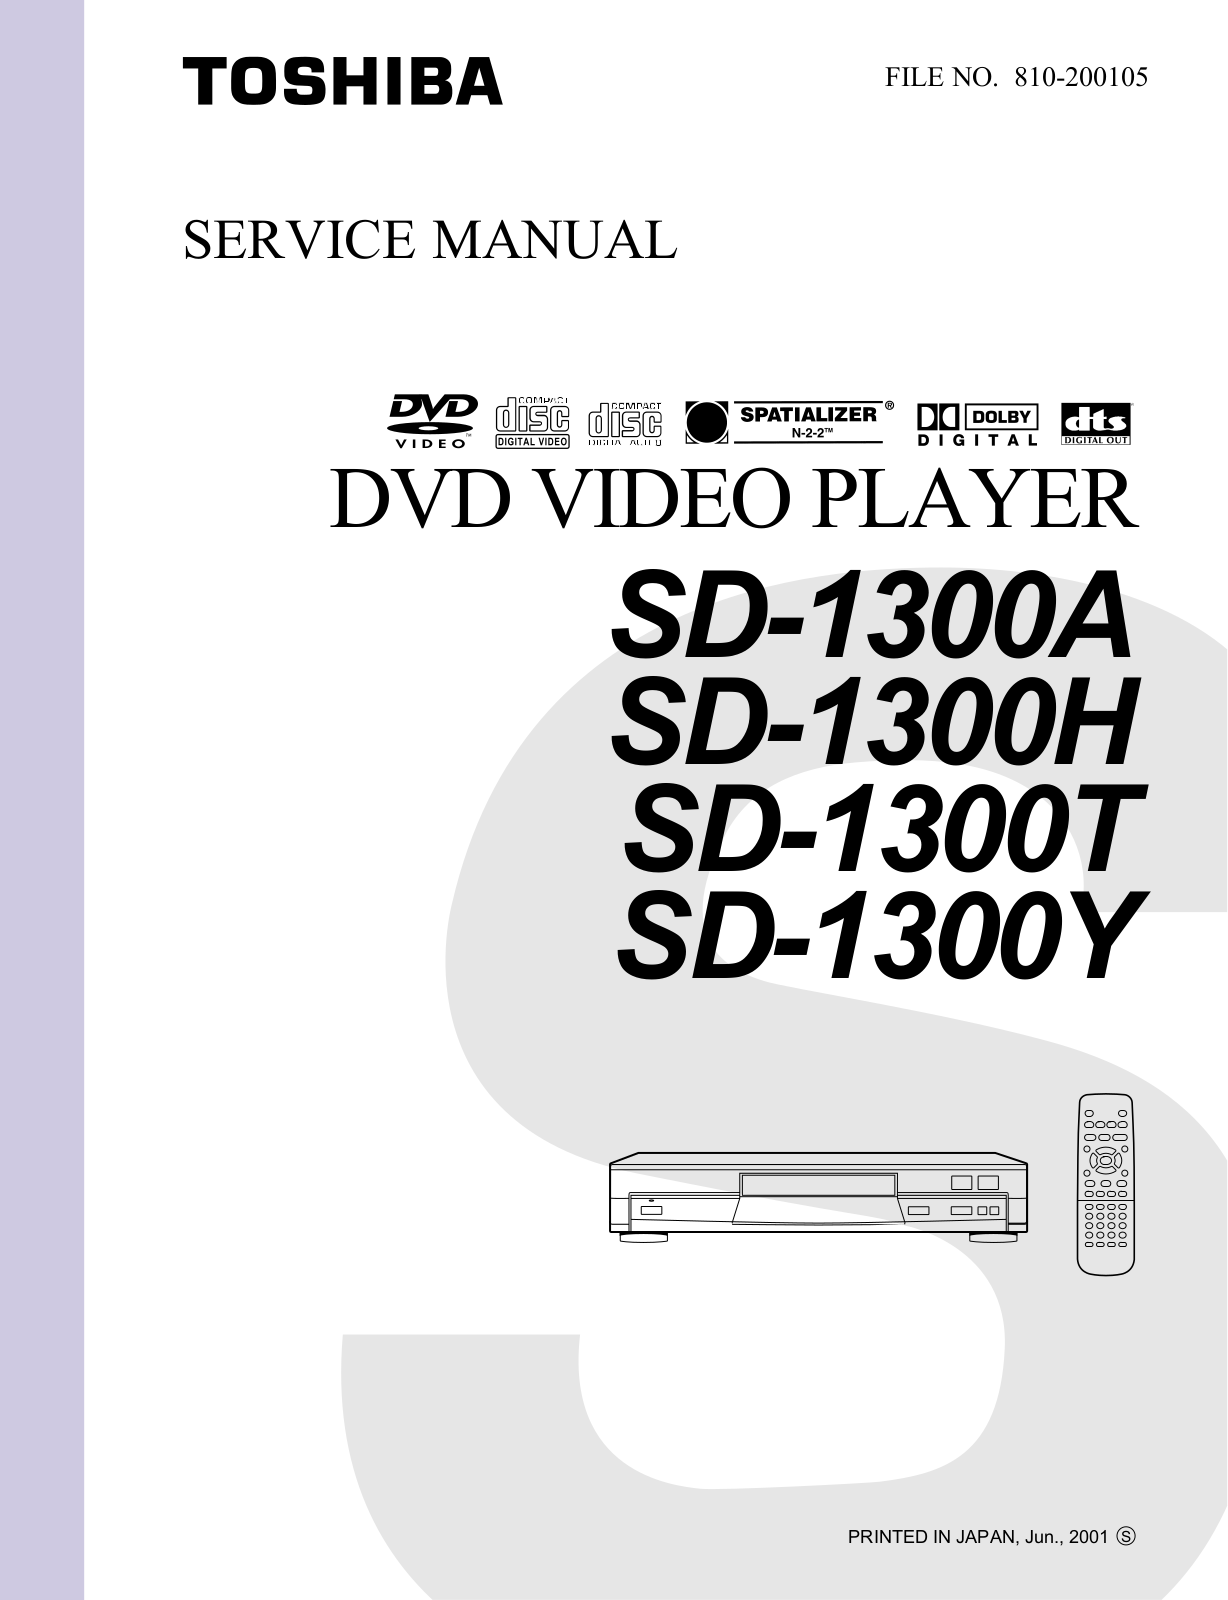 Toshiba SD-1300Y, SD-1300T, SD-1300H, SD-1300A Service Manual